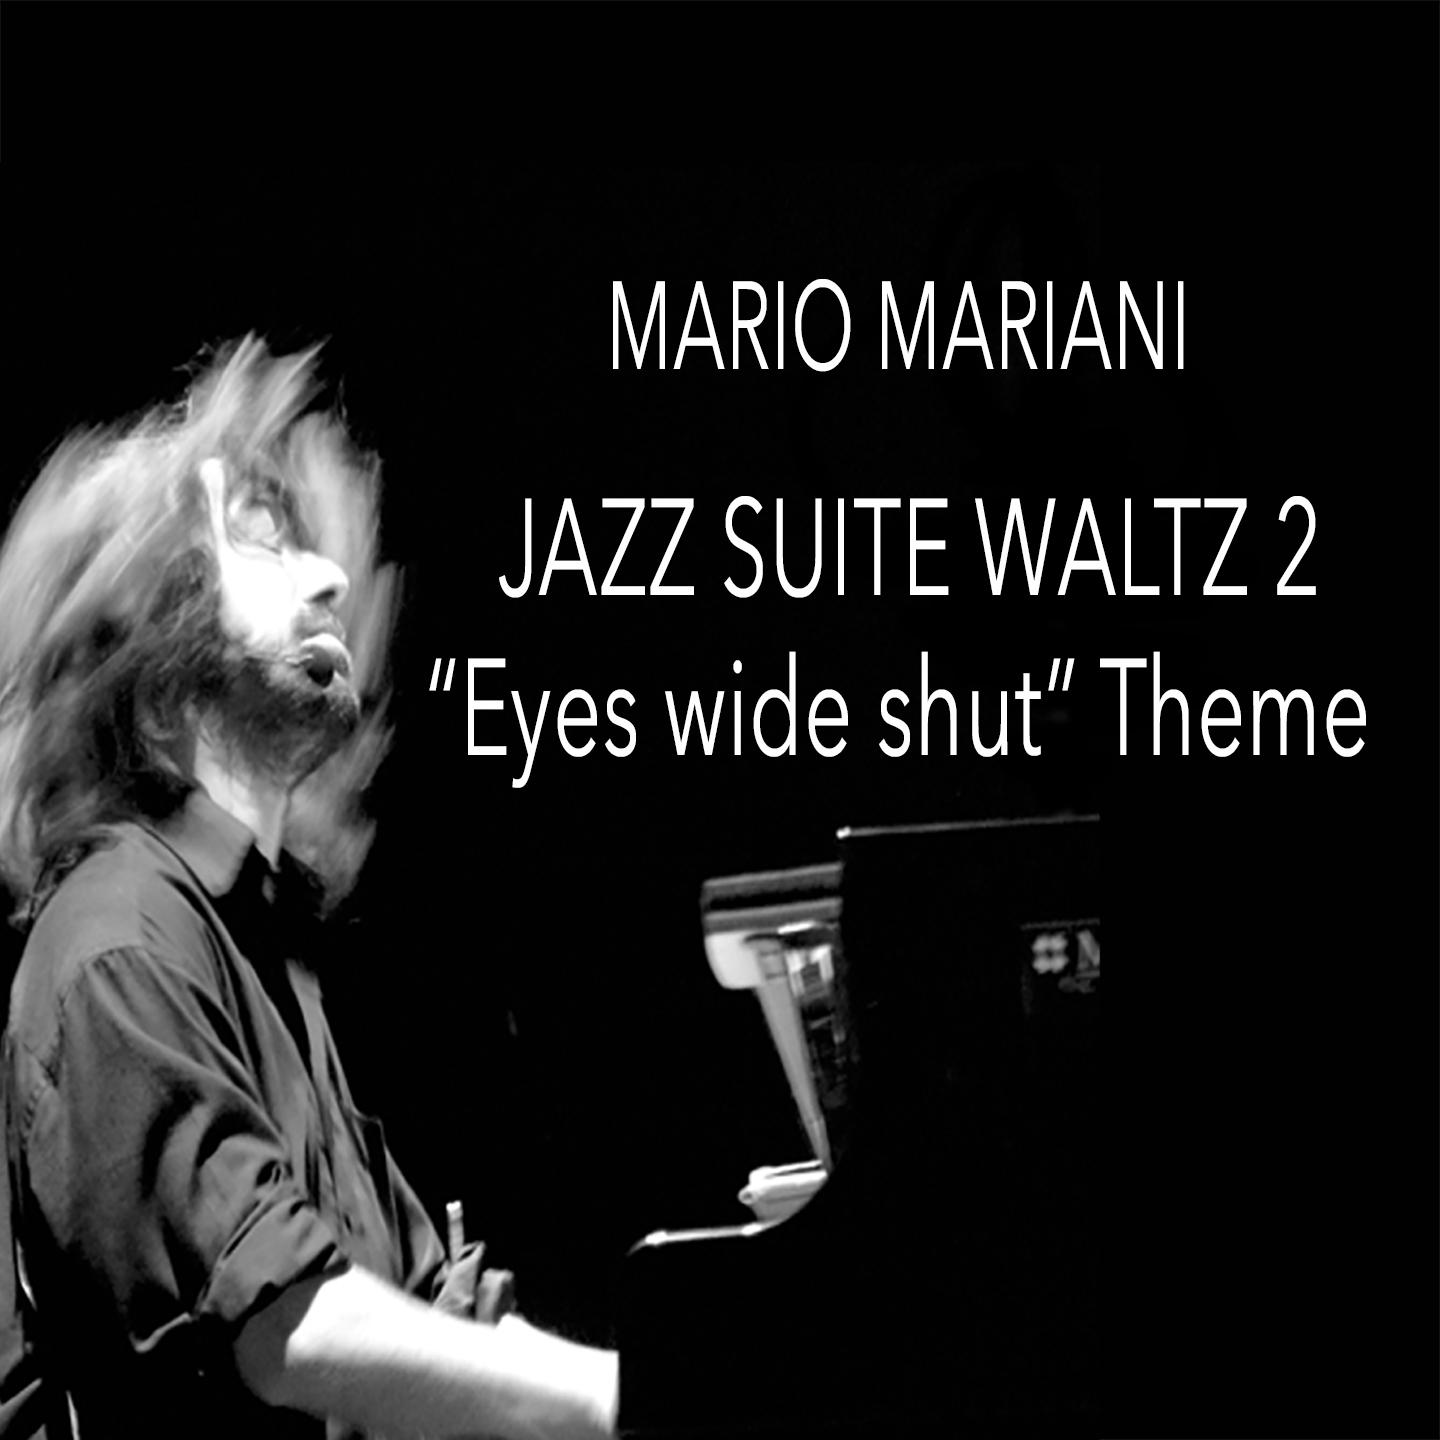 Suite for Jazz Orchestra No. 2:Waltz